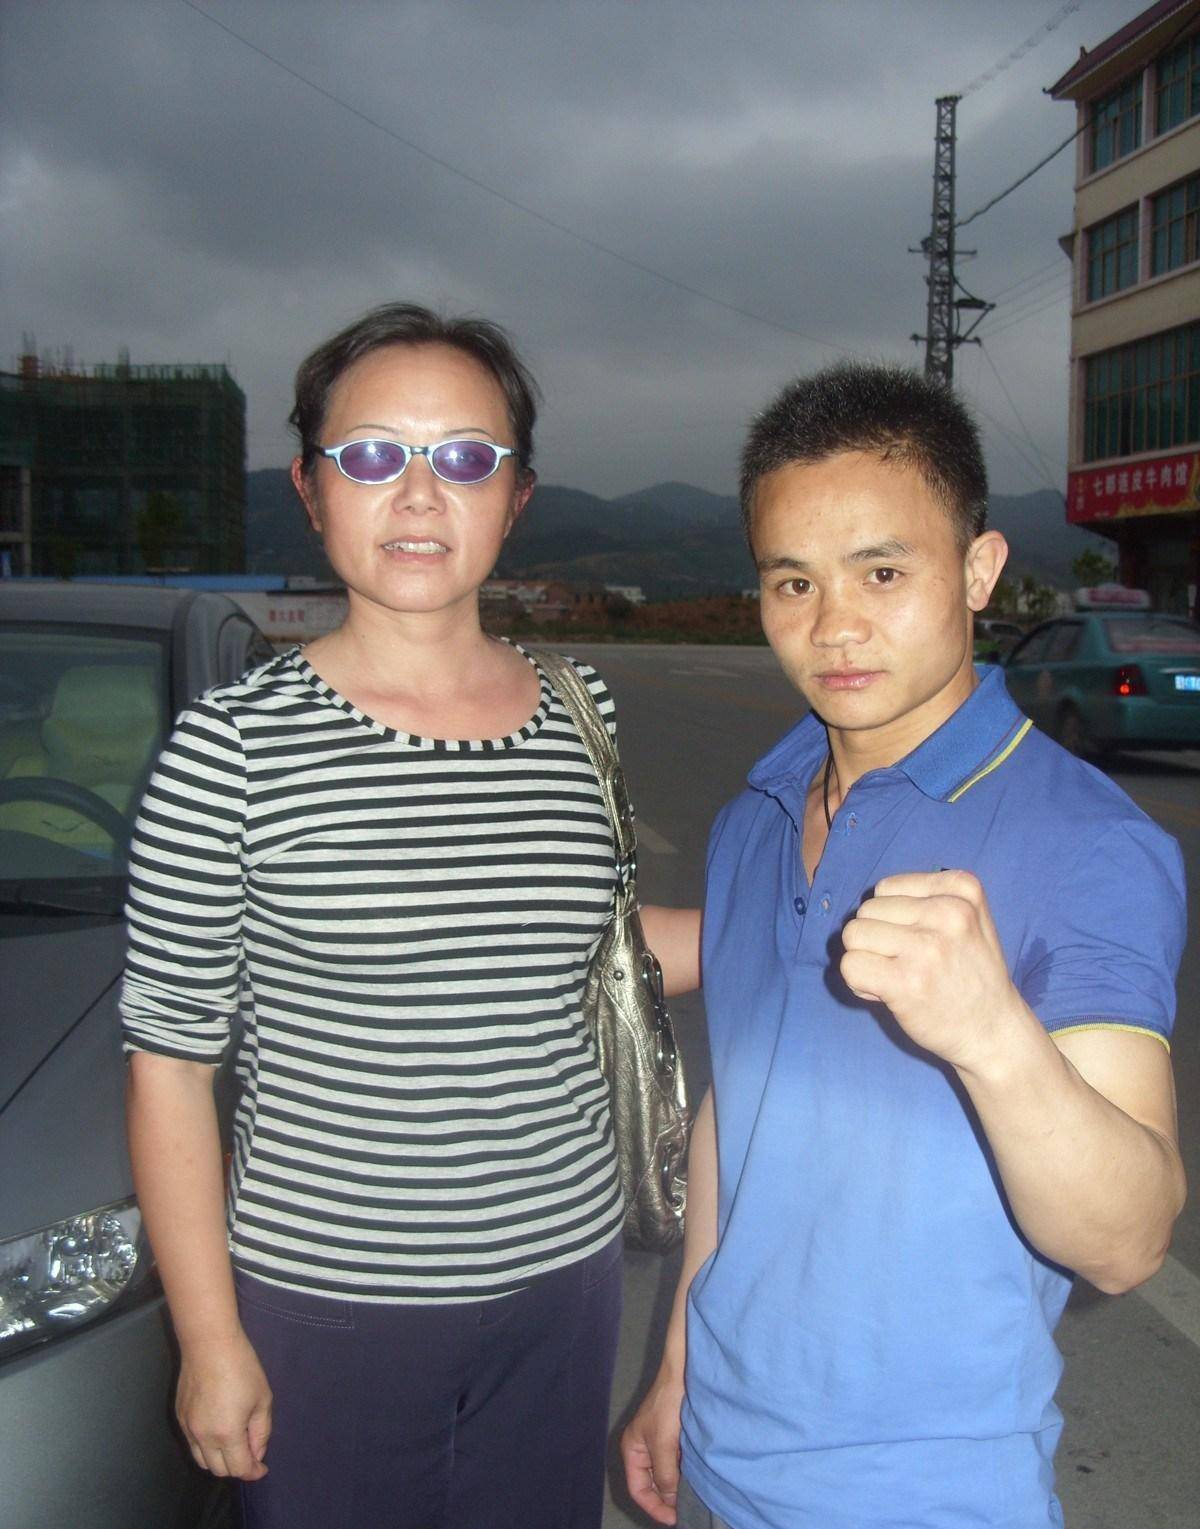 2012年,1米55中国矿工成为世界拳王,娶了以兄妹相称的美女主播